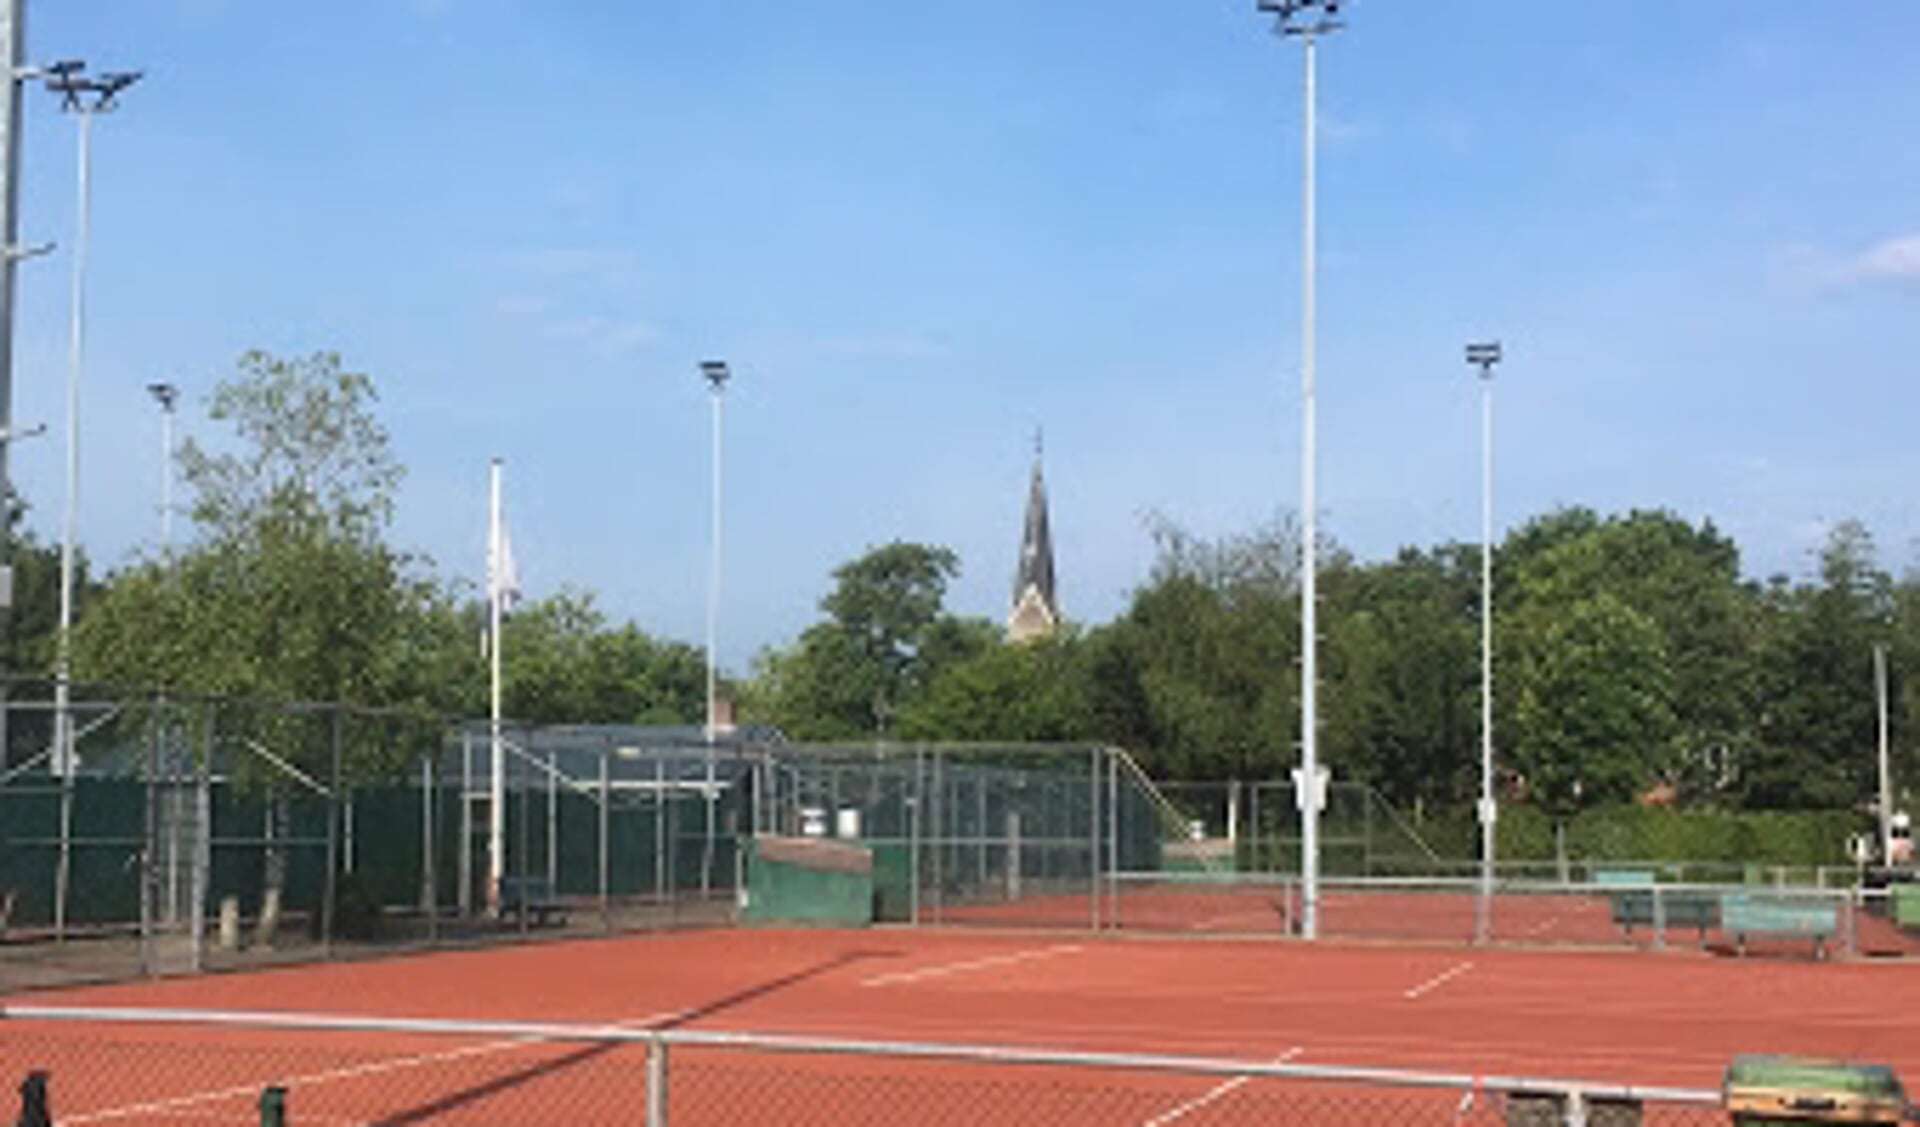 De tennisbanen van de tennisvereniging Warmenhuizen zijn er helemaal klaar voor.